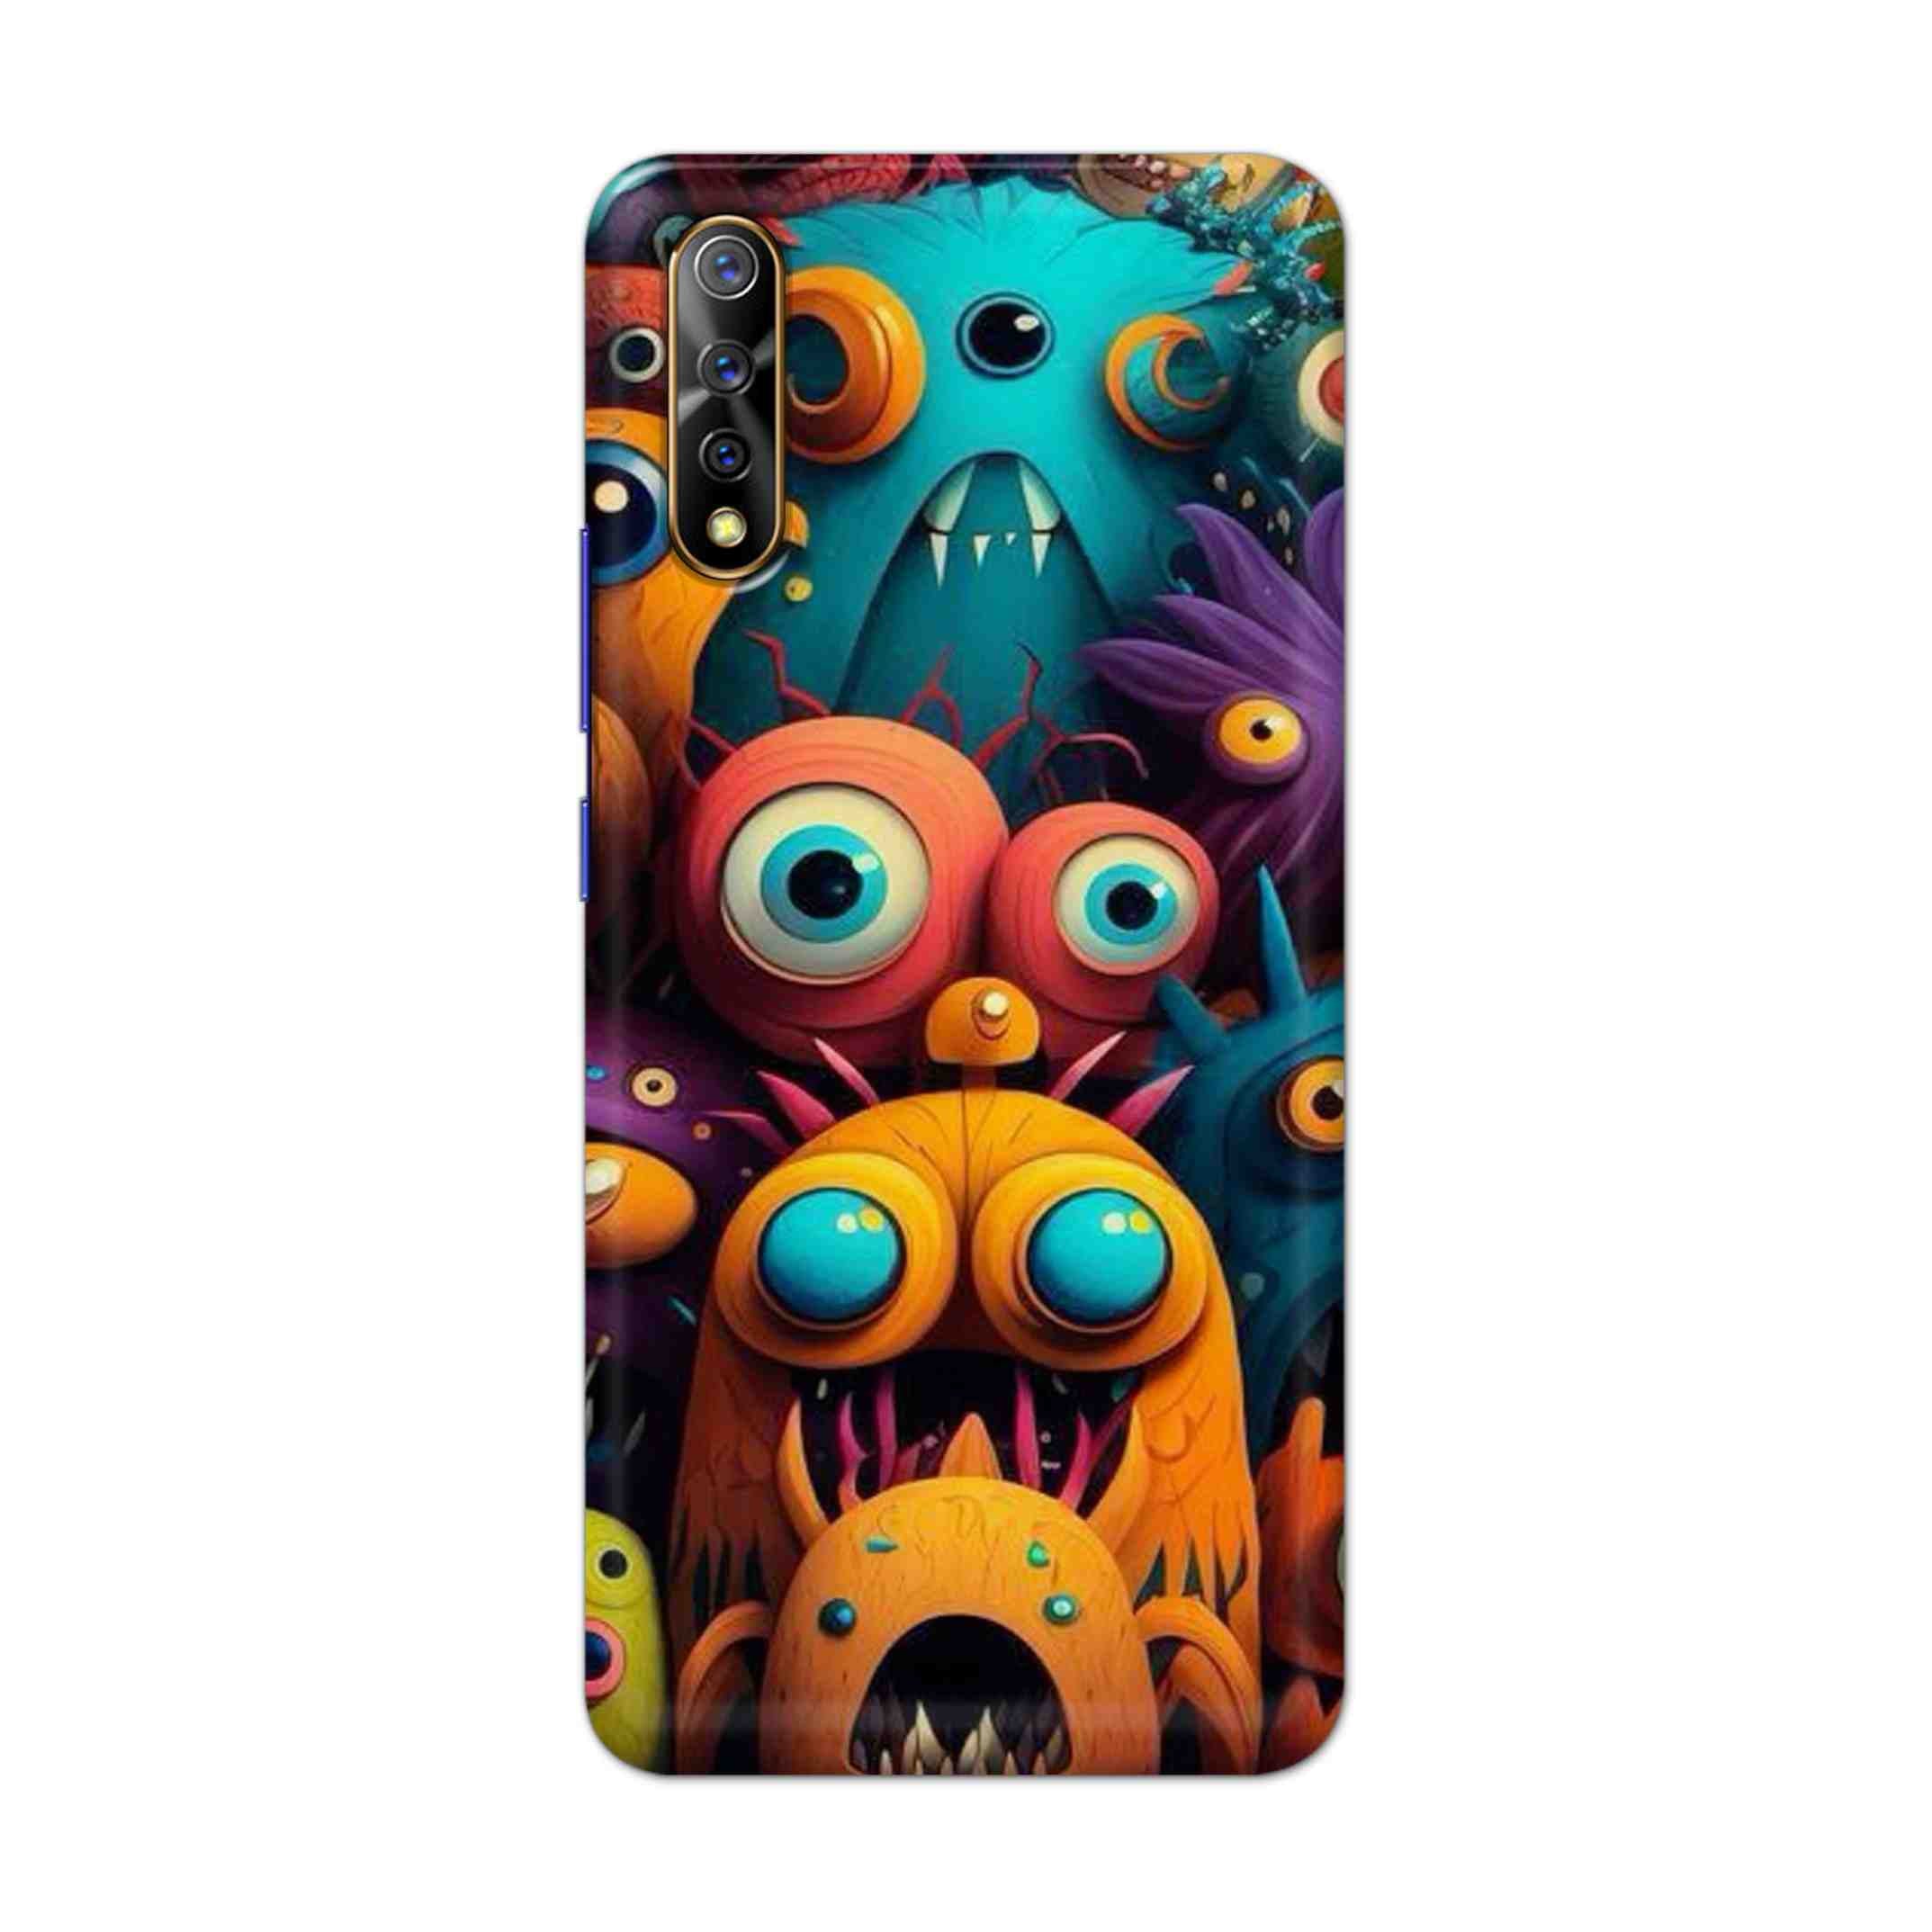 Buy Zombie Hard Back Mobile Phone Case Cover For Vivo S1 / Z1x Online